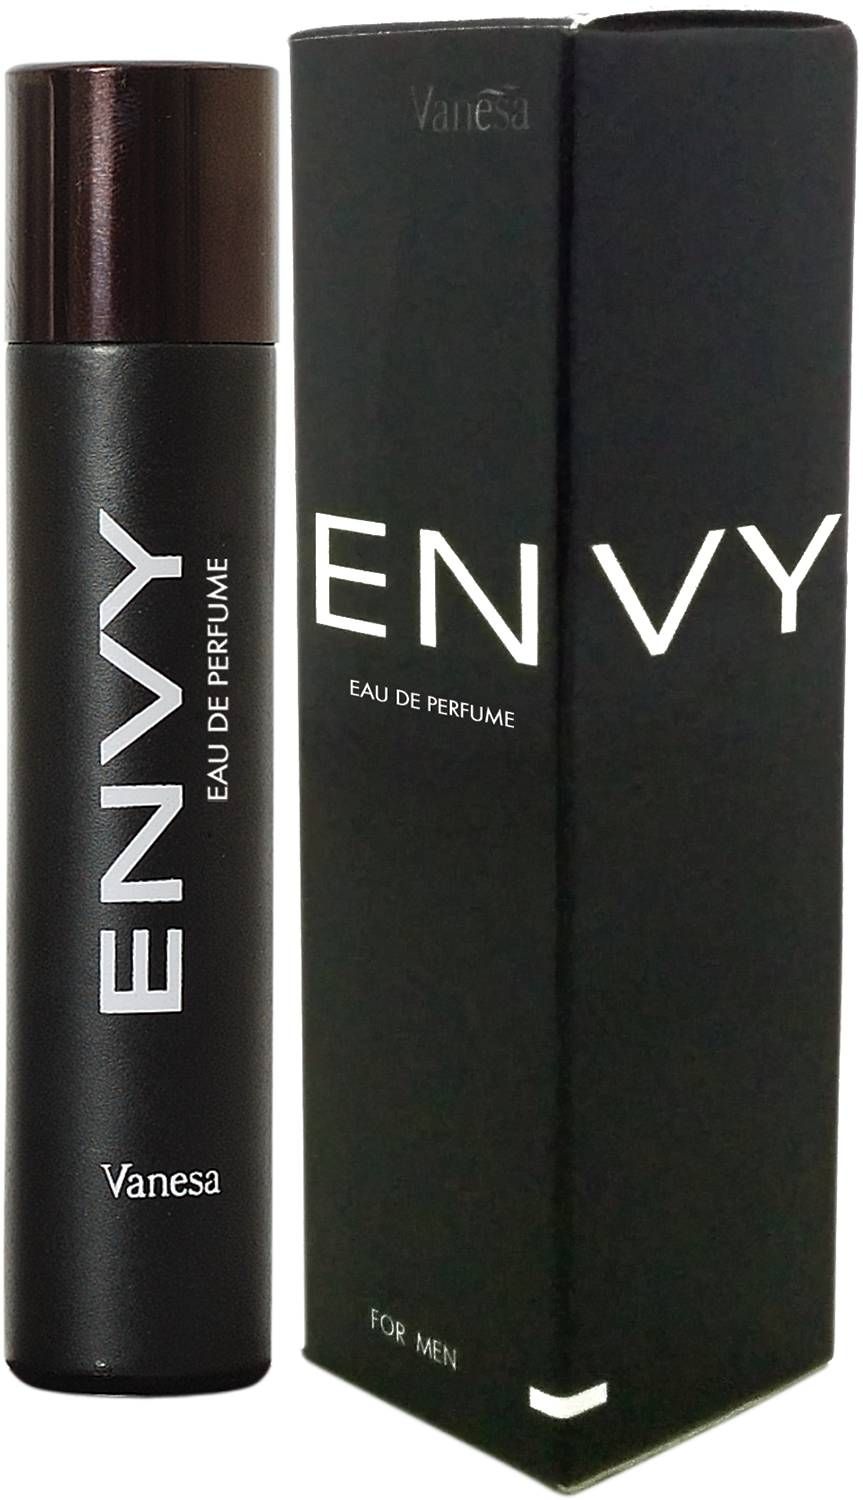 envy mens perfume